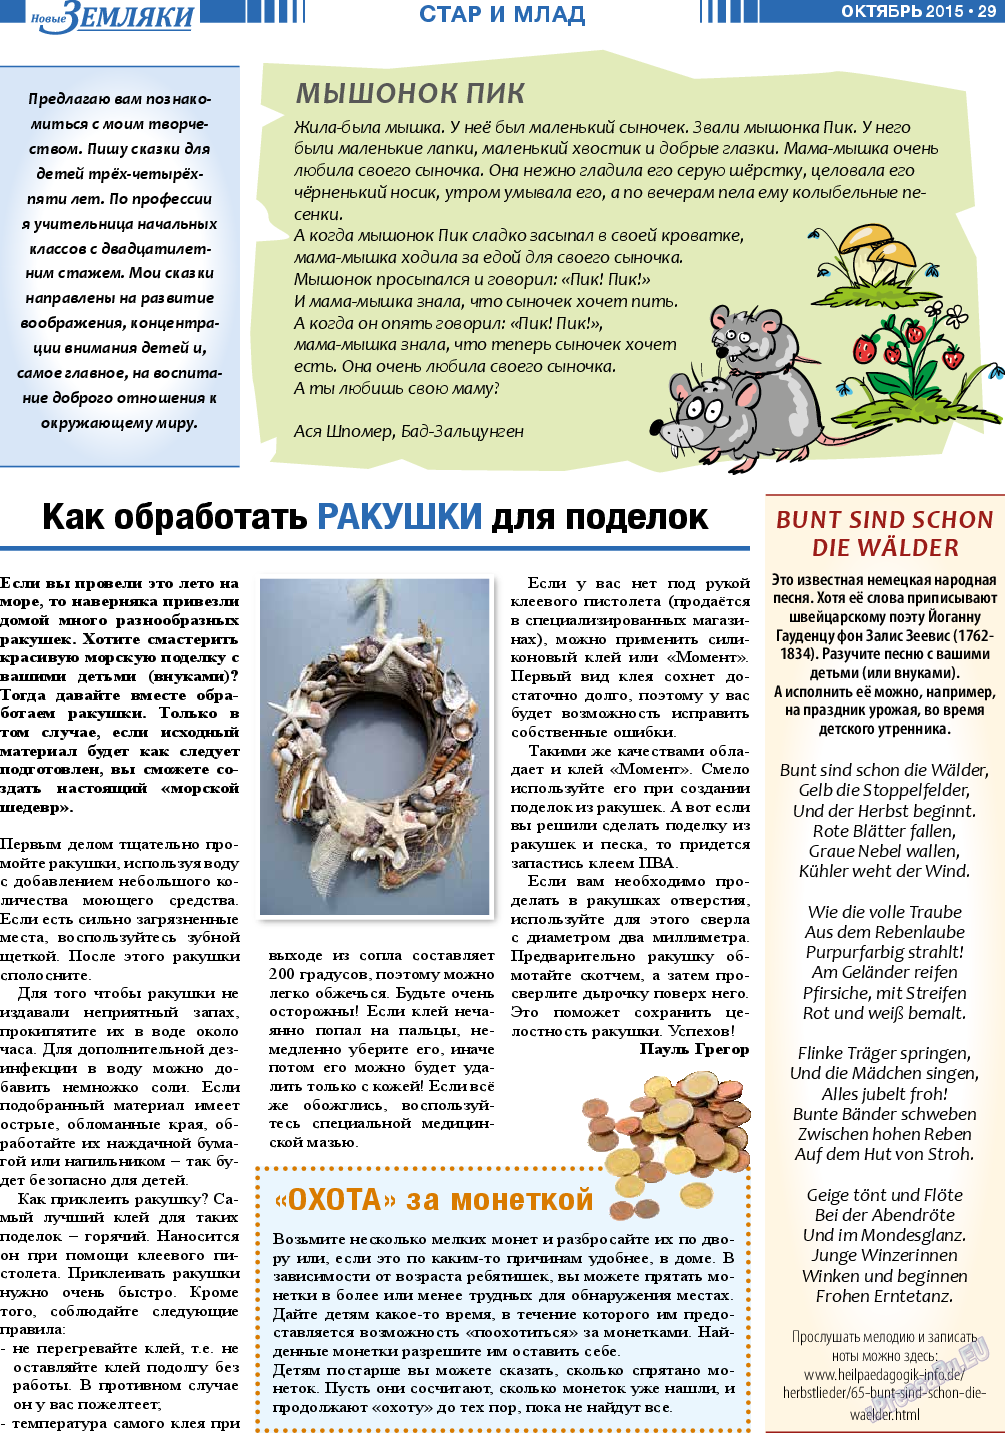 Новые Земляки, газета. 2015 №10 стр.29